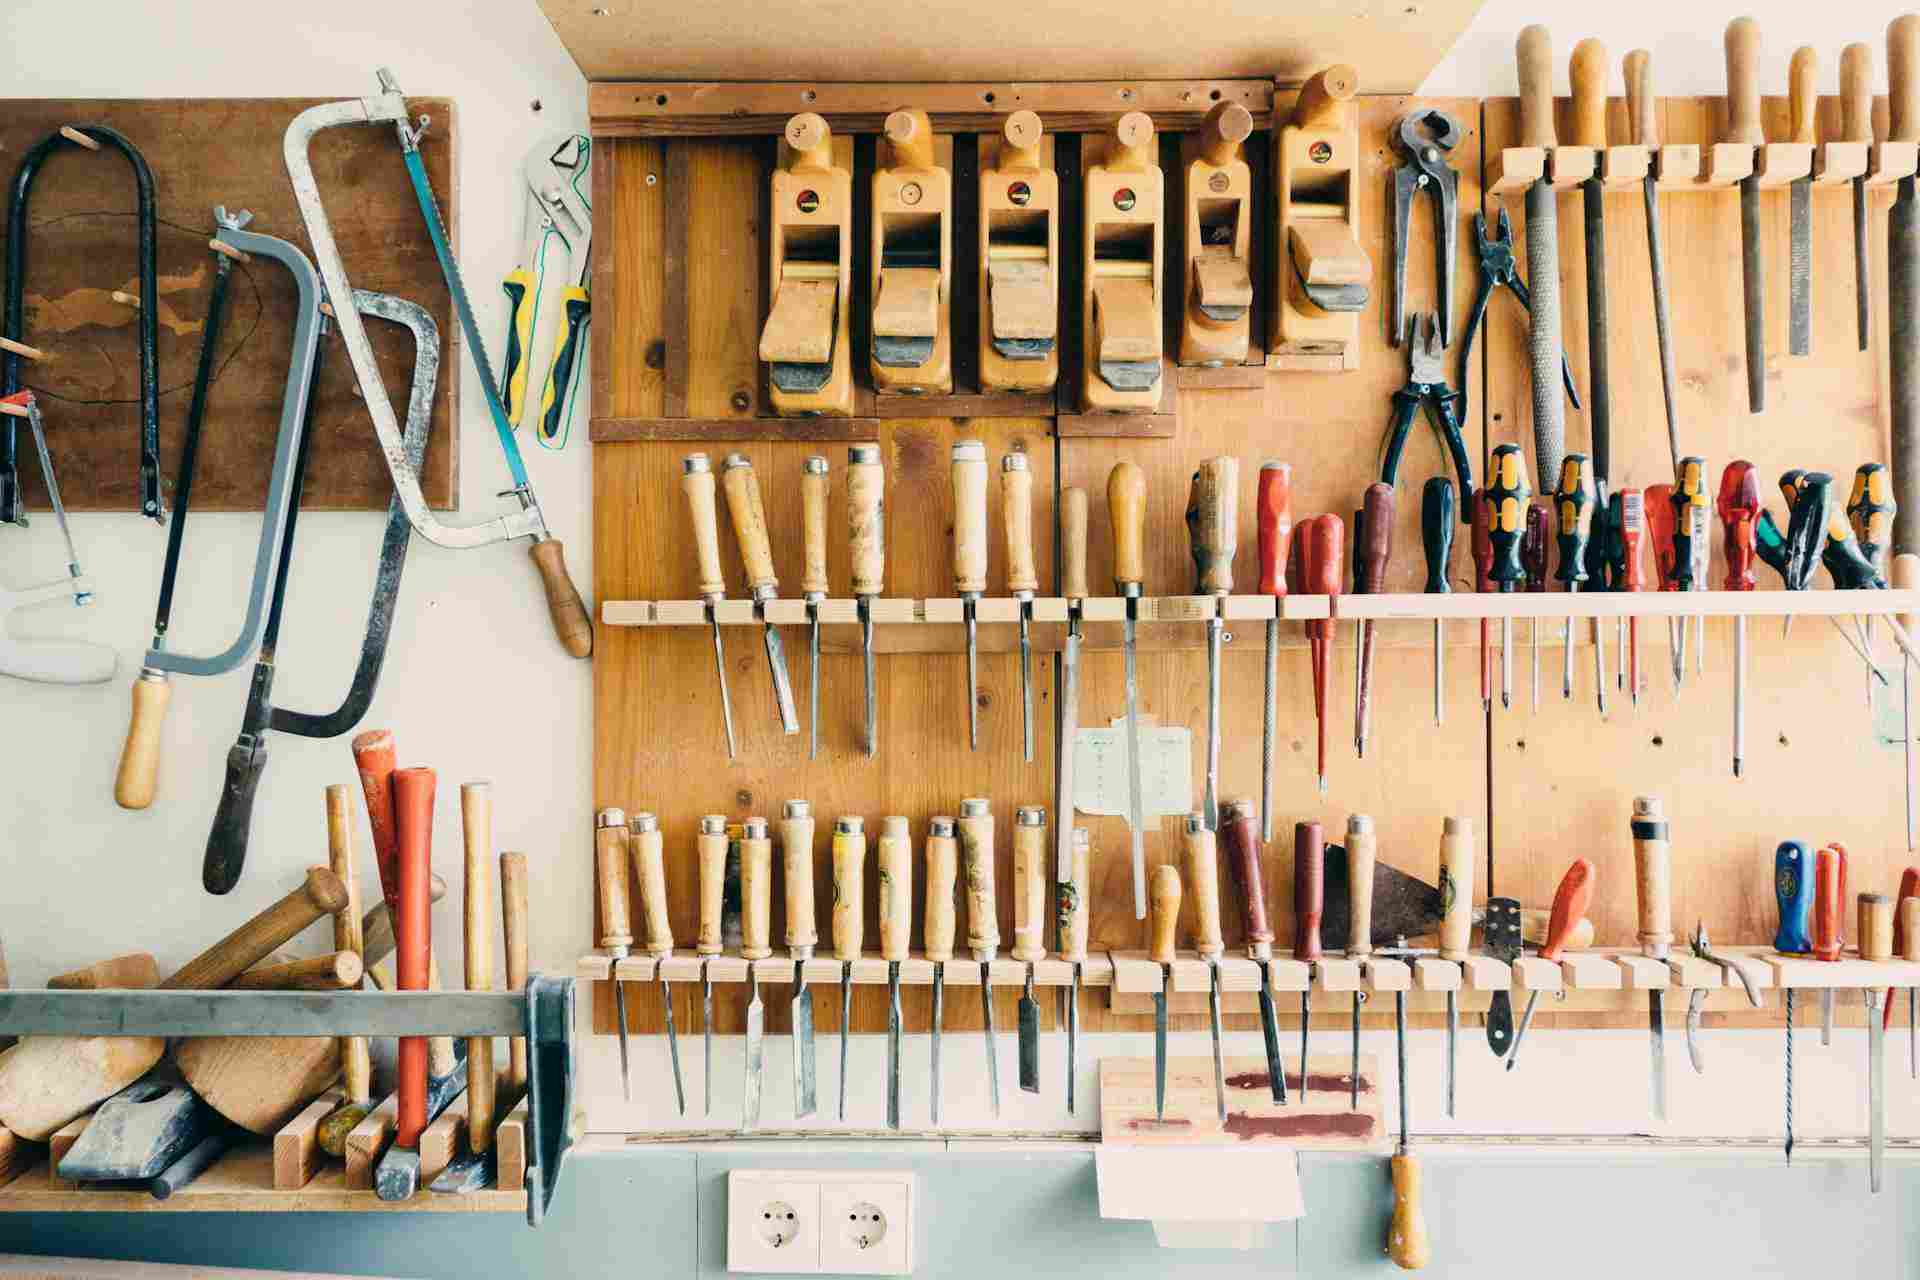 Tablero de herramientas montado en la pared de un taller, organizado meticulosamente con una variedad de herramientas manuales como sierras, cinceles, martillos y destornilladores, destacando un surtido completo para la carpintería.